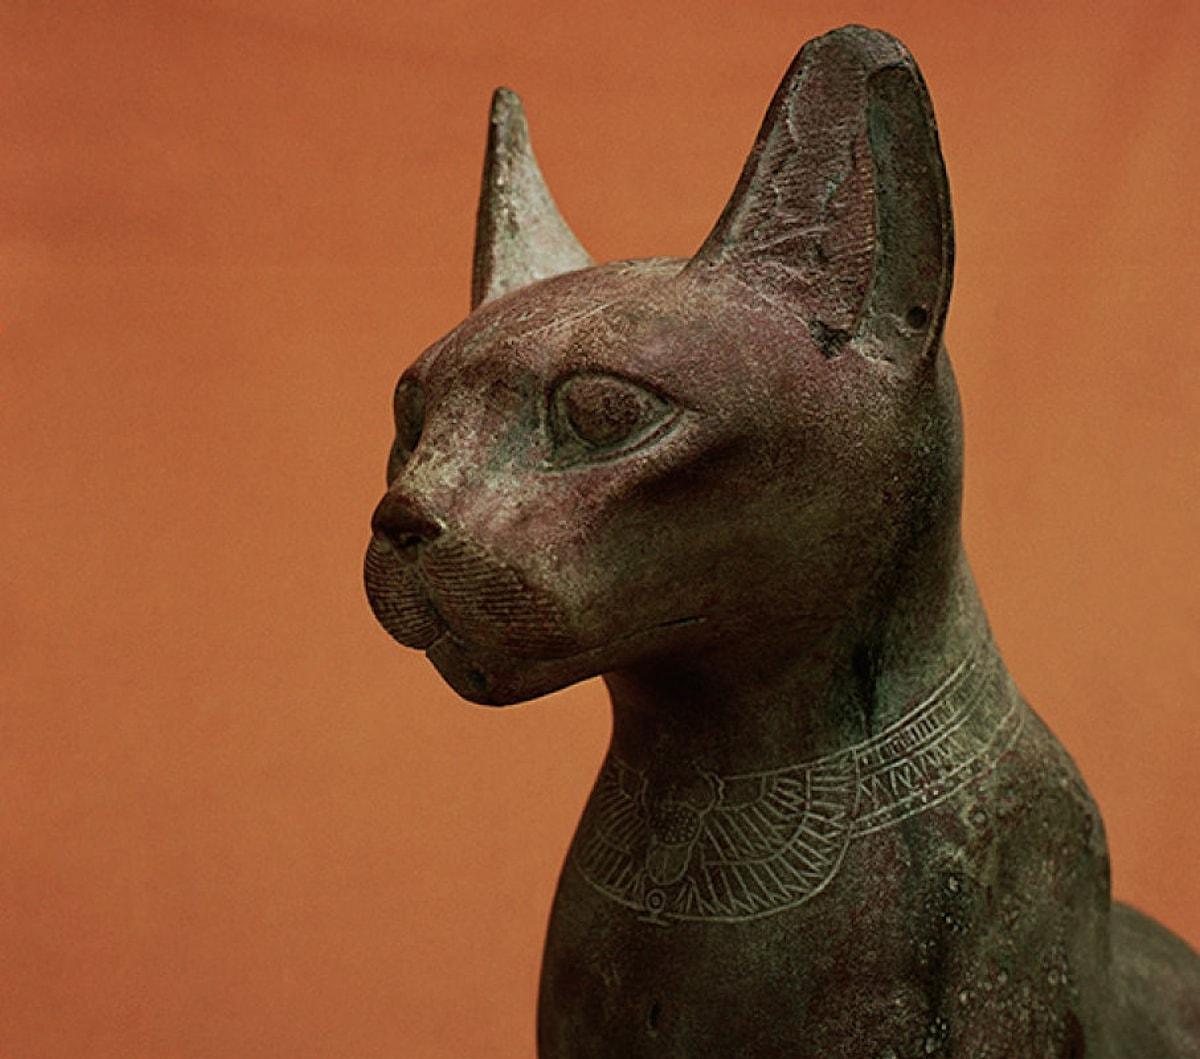 Музыка египта для кошек. Британский музей музей богиня Бастет. Древний Египет анималистическая скульптура. Статуи сфинксов Каирский музей. Статуя Баст.